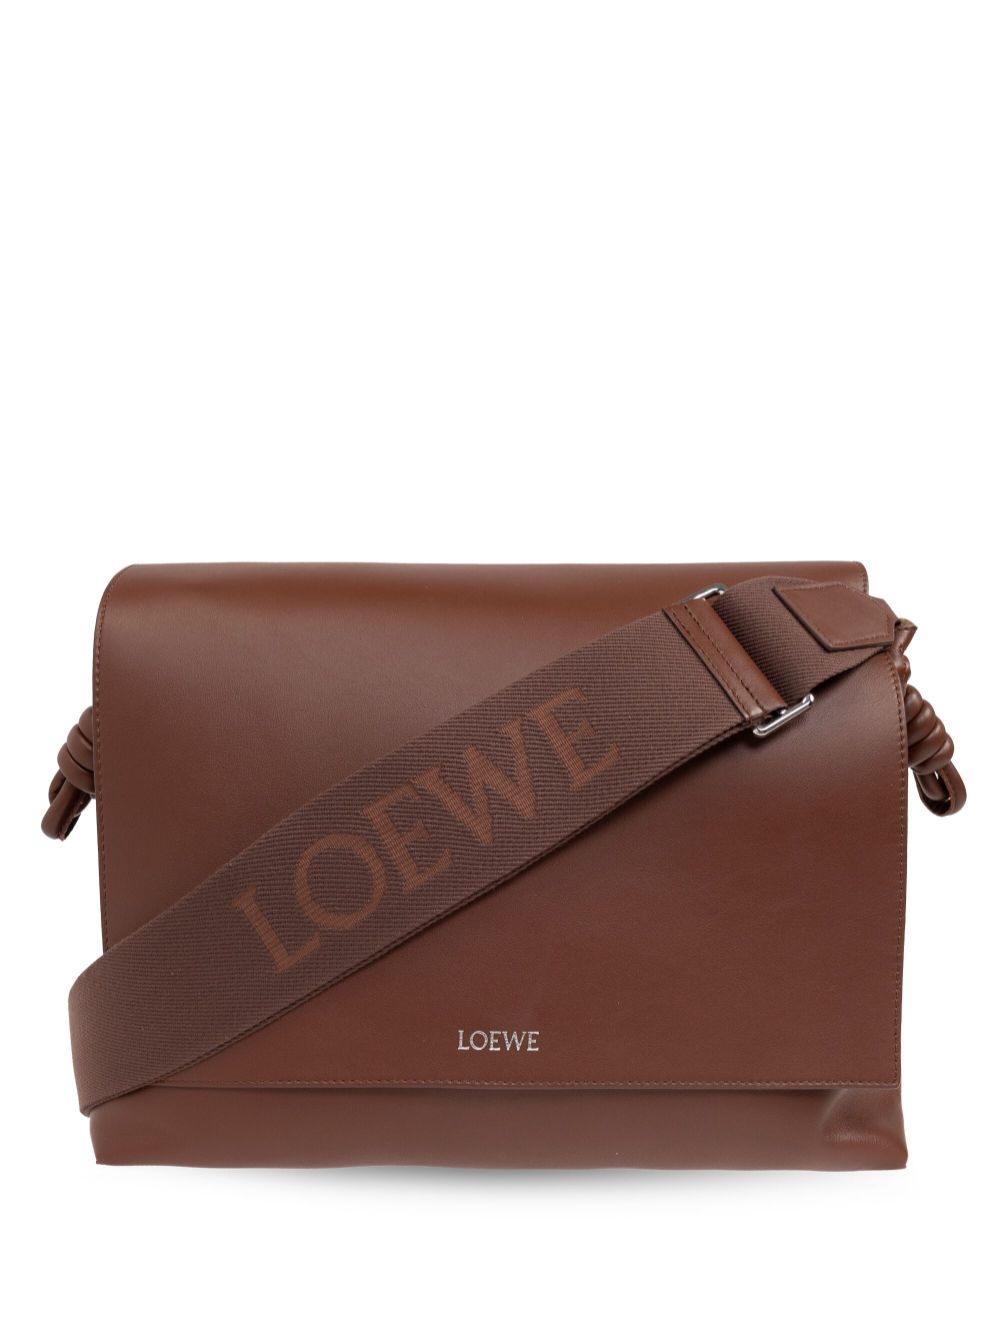 LOEWE Flamenco leather messenger bag - Brown von LOEWE